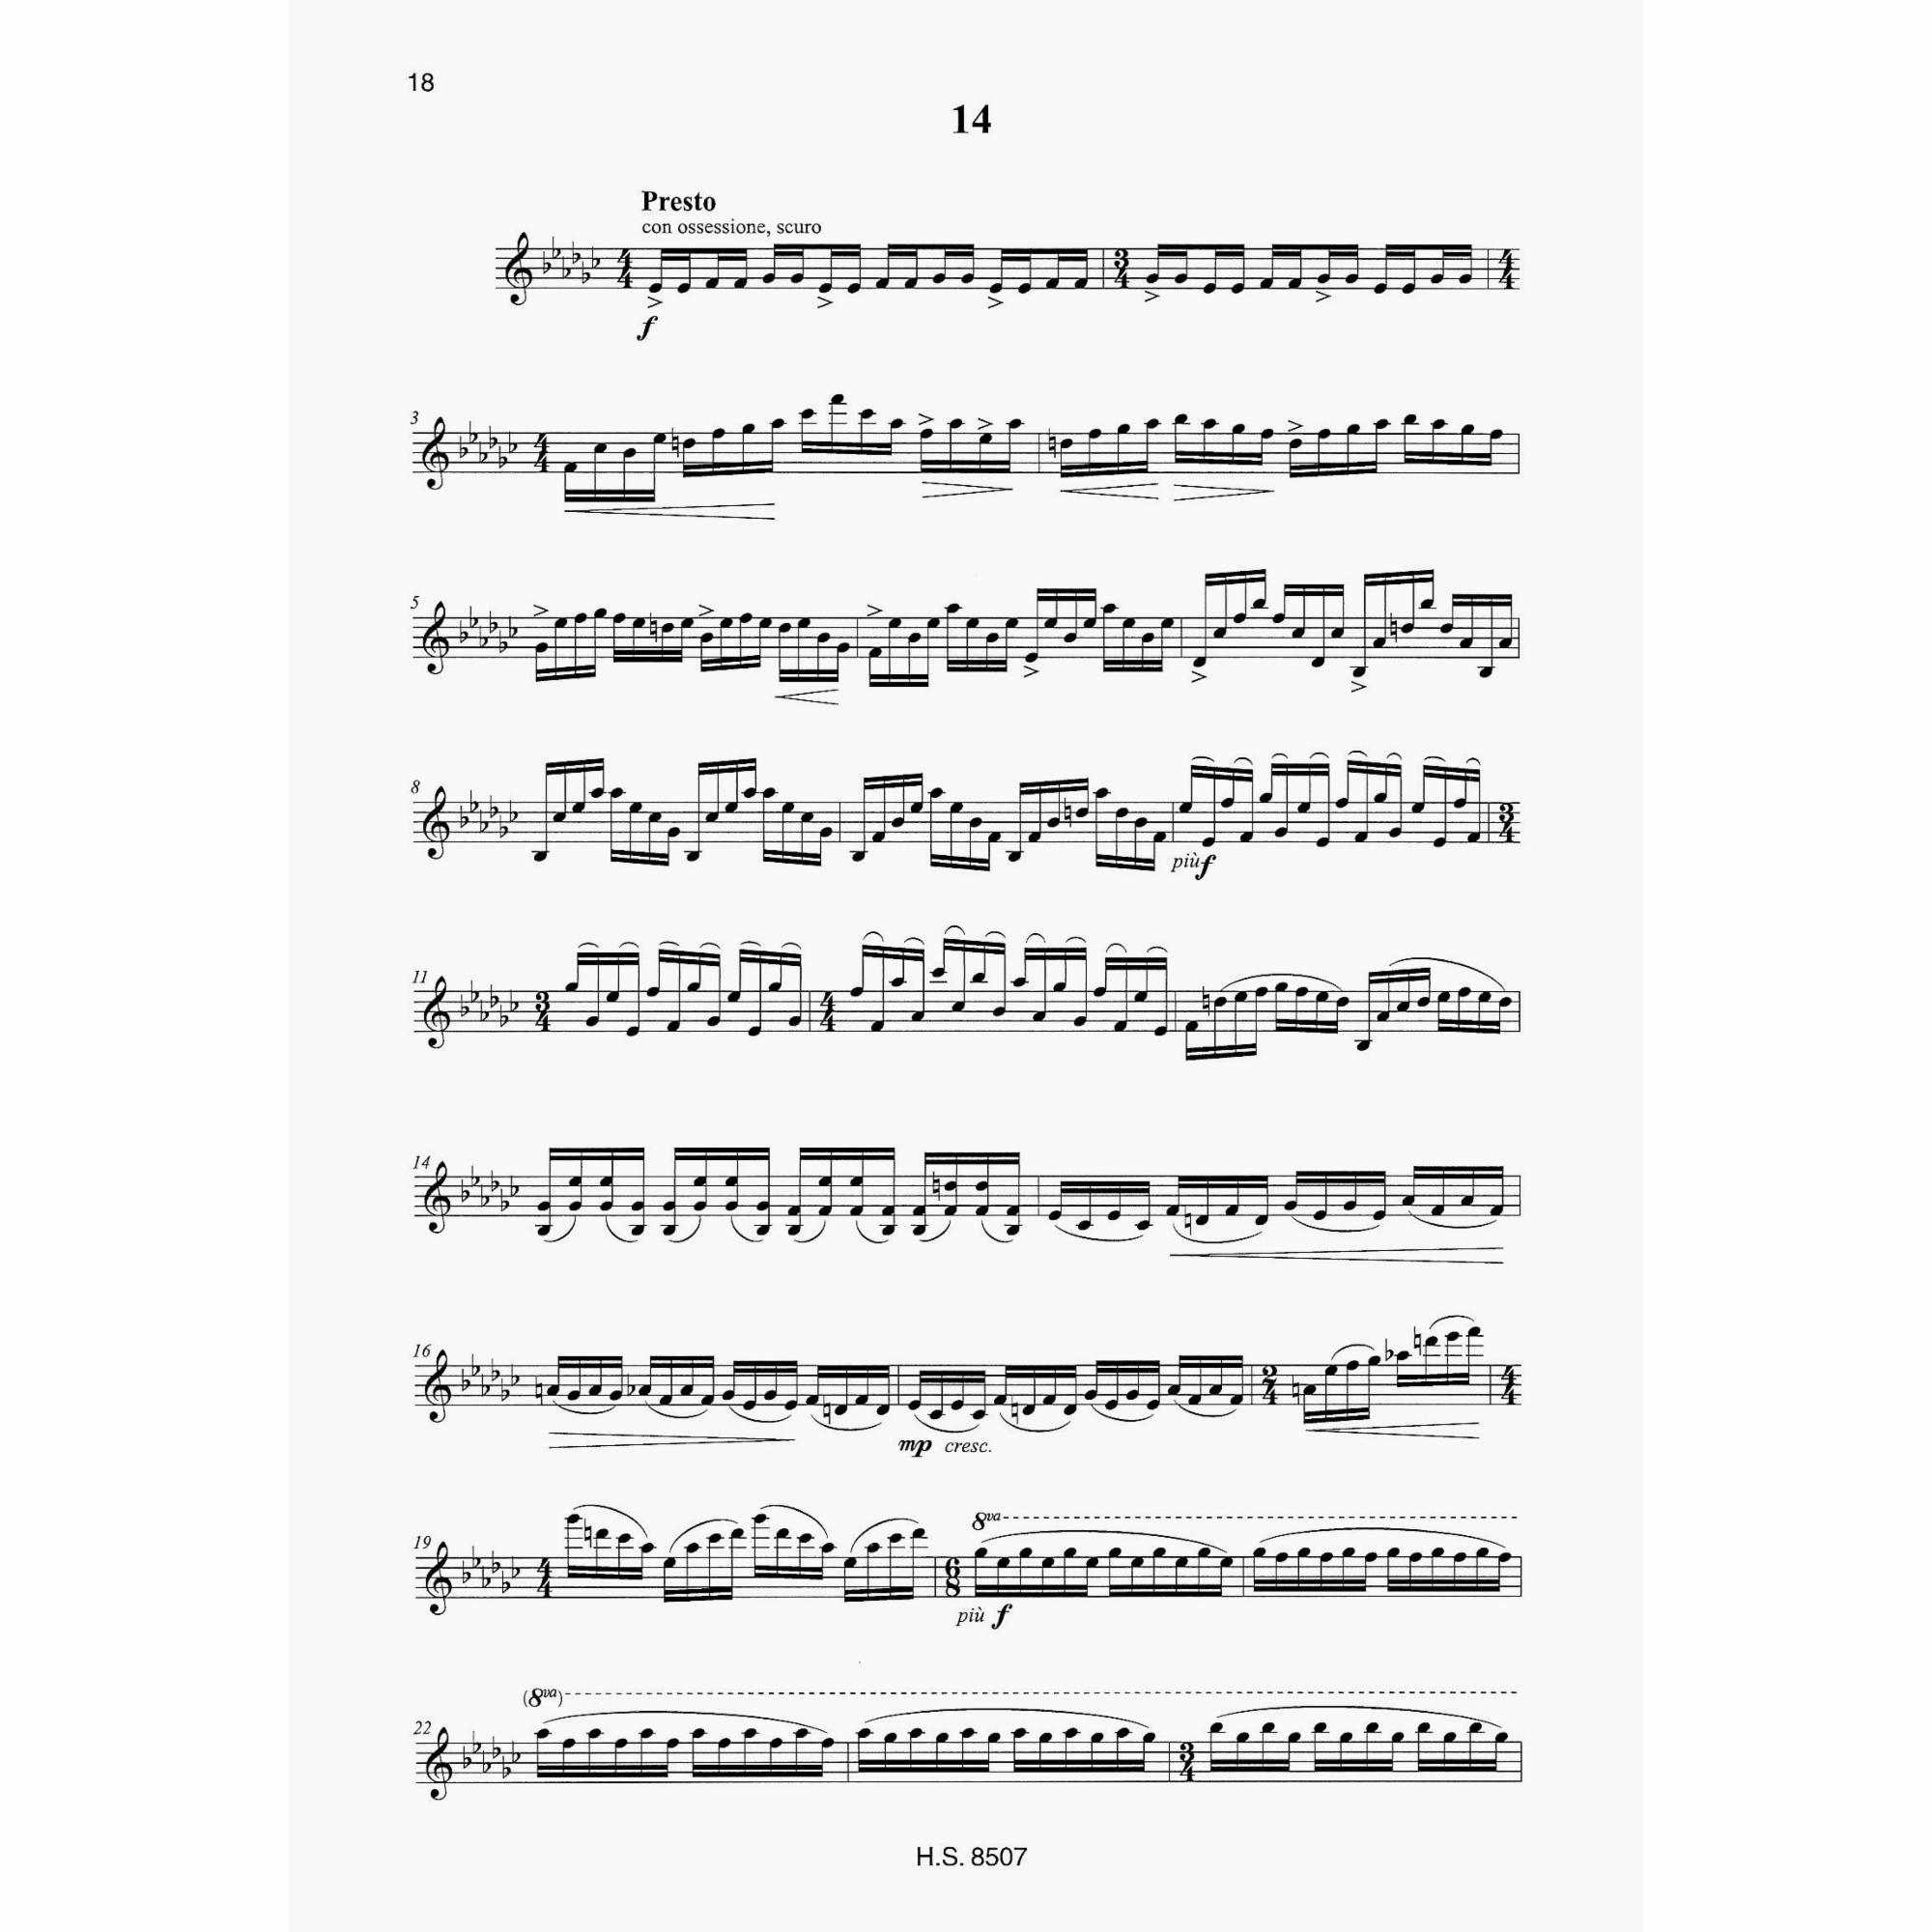 Sample: Violin (Pg. 18)